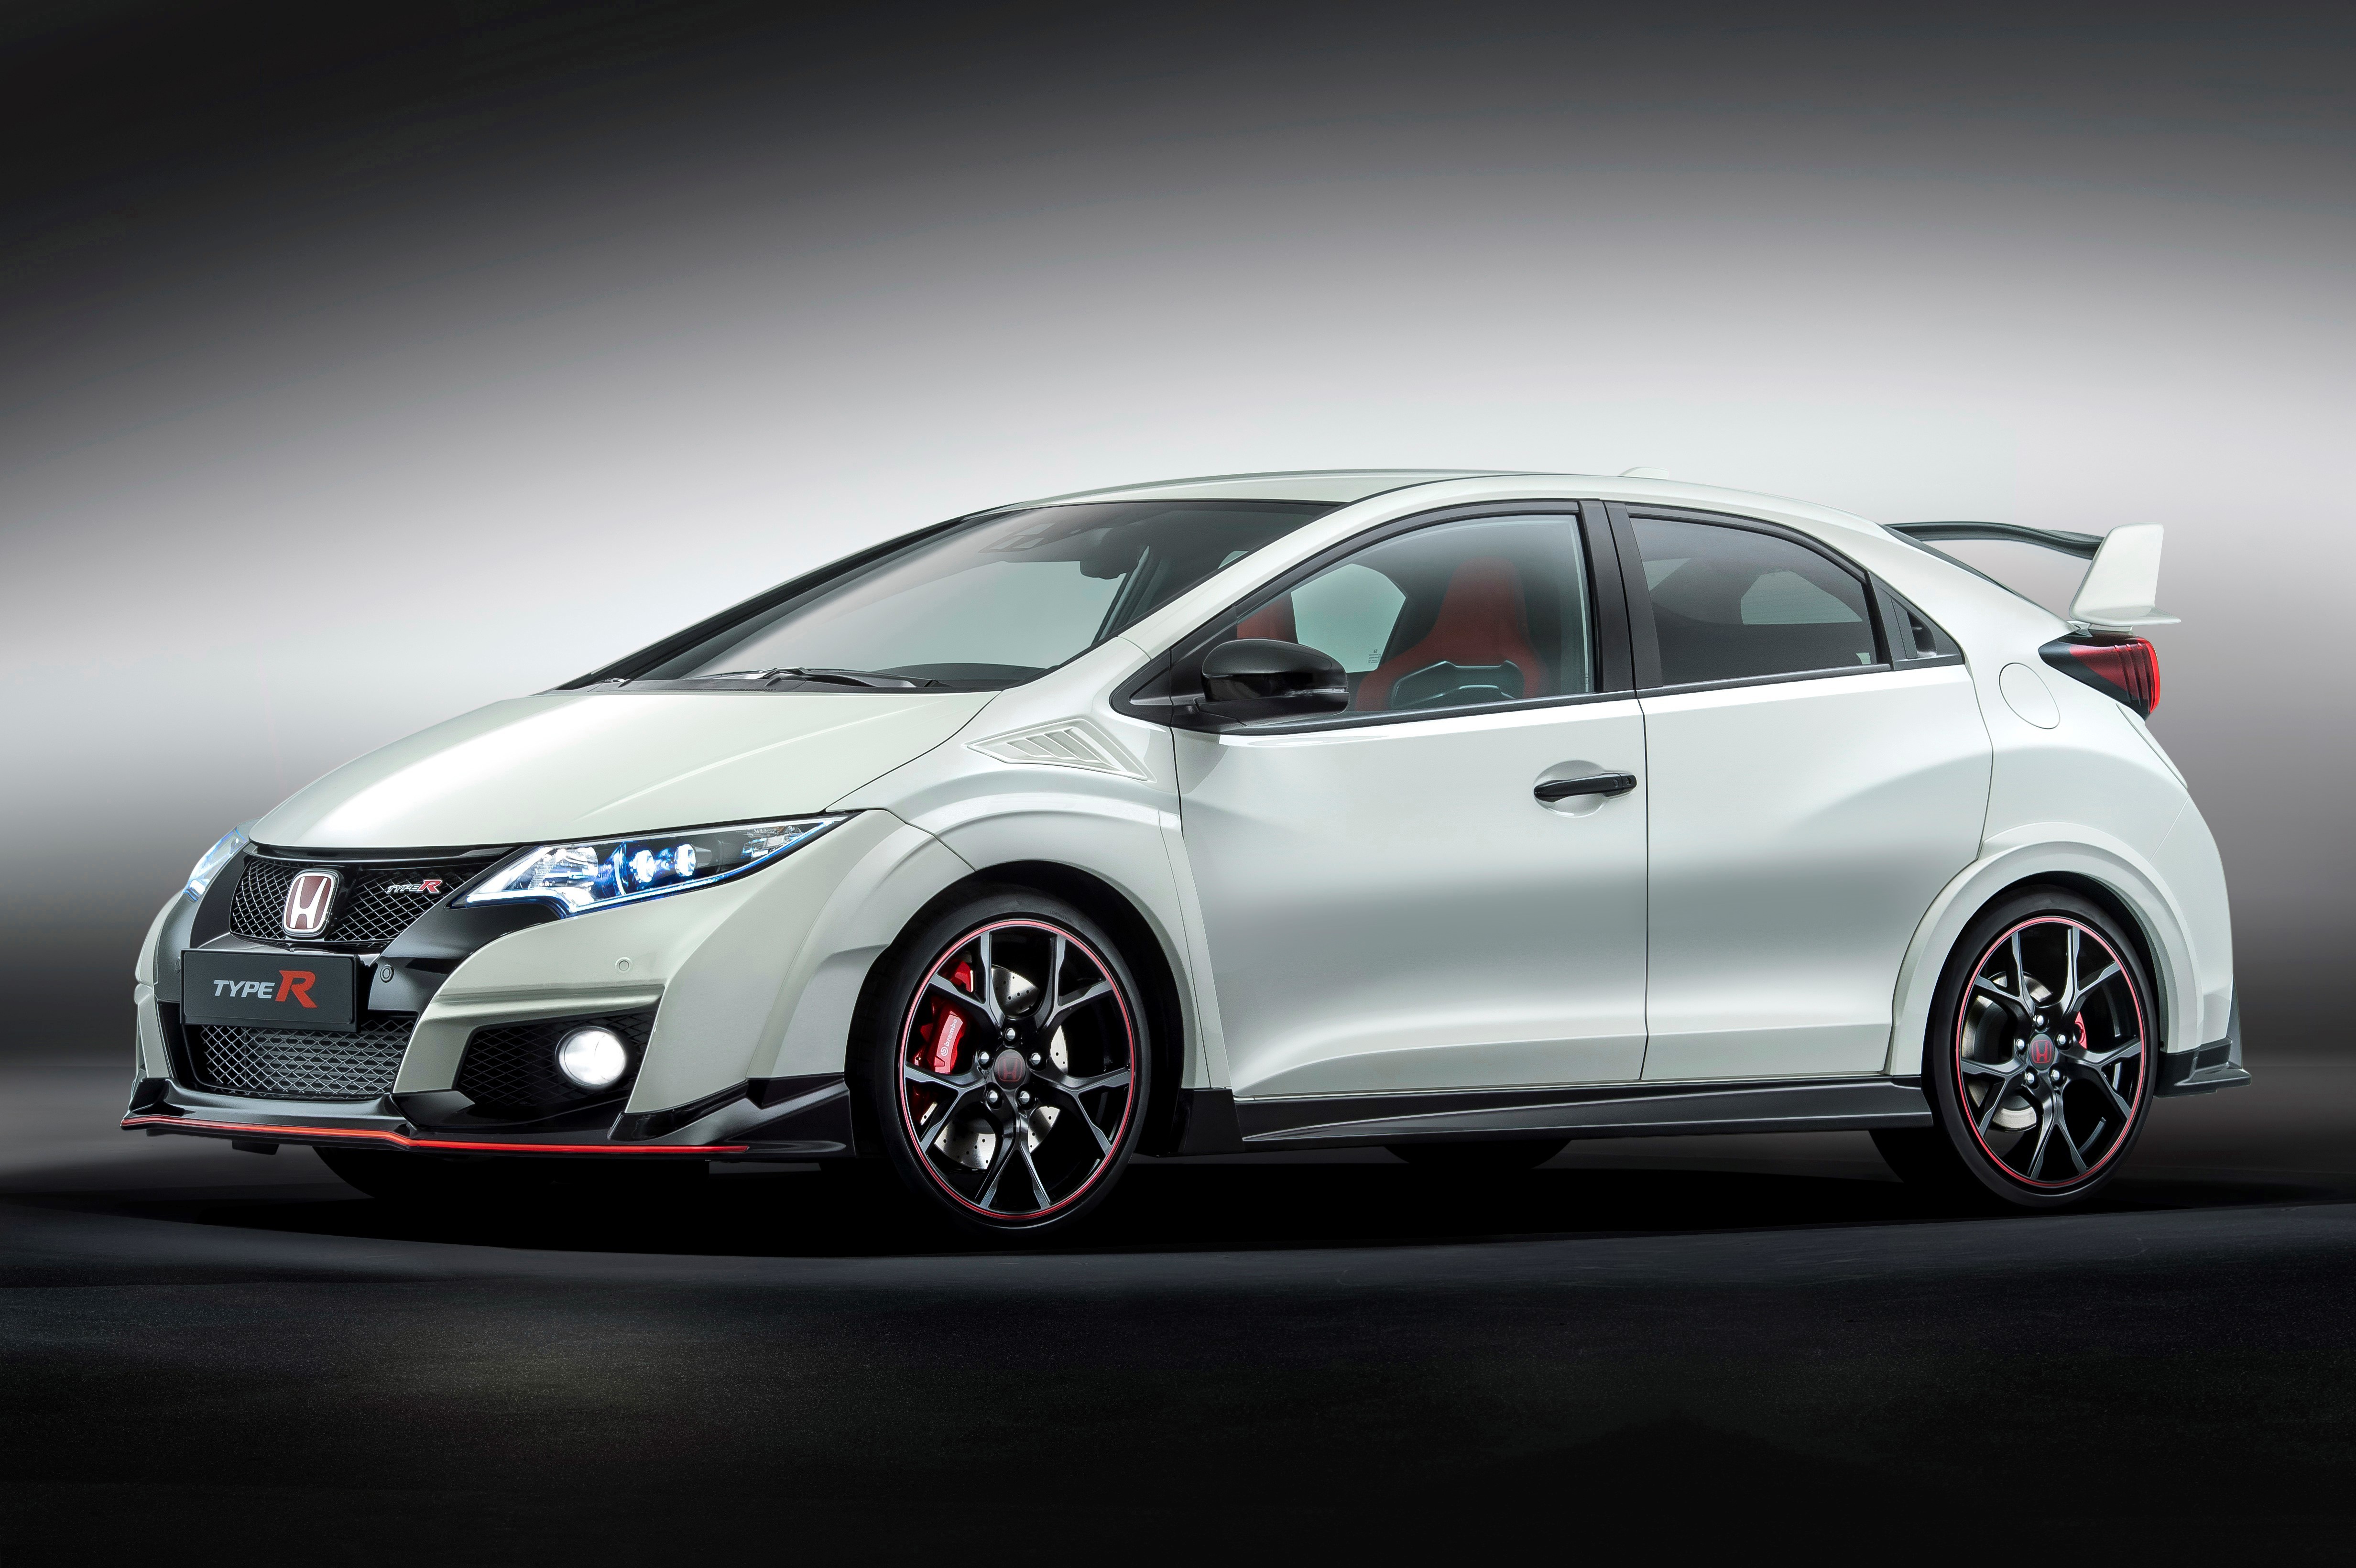 Honda prepara interesantes novedades para el Salón de Tokio 2015